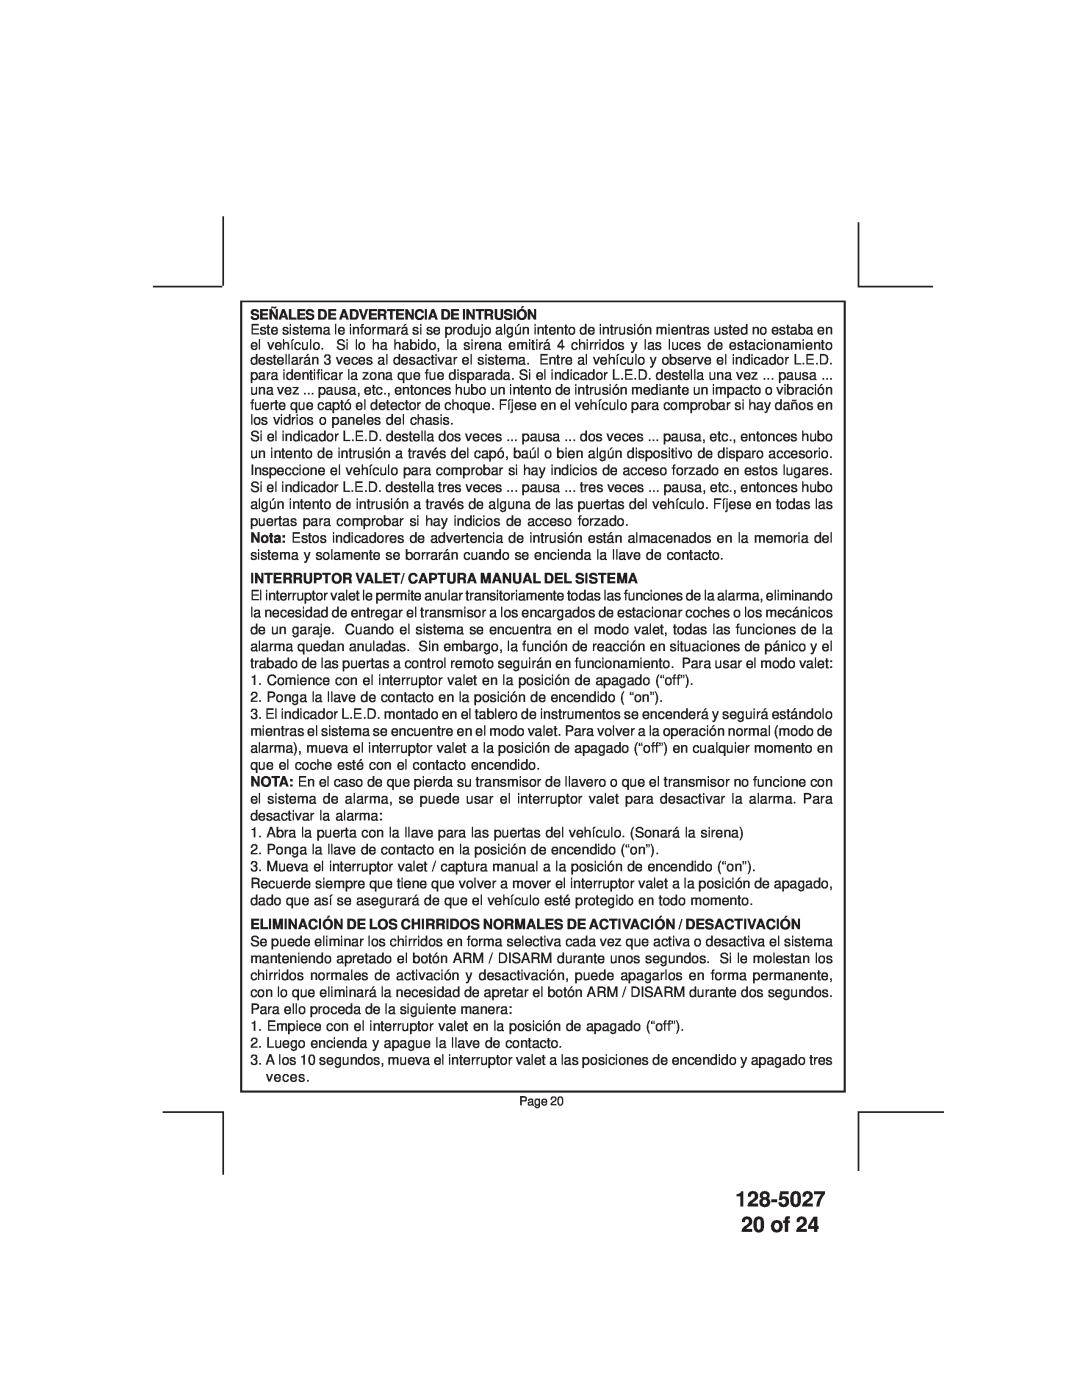 Audiovox APS-750 128-5027 20 of, Señales De Advertencia De Intrusión, Interruptor Valet/ Captura Manual Del Sistema 